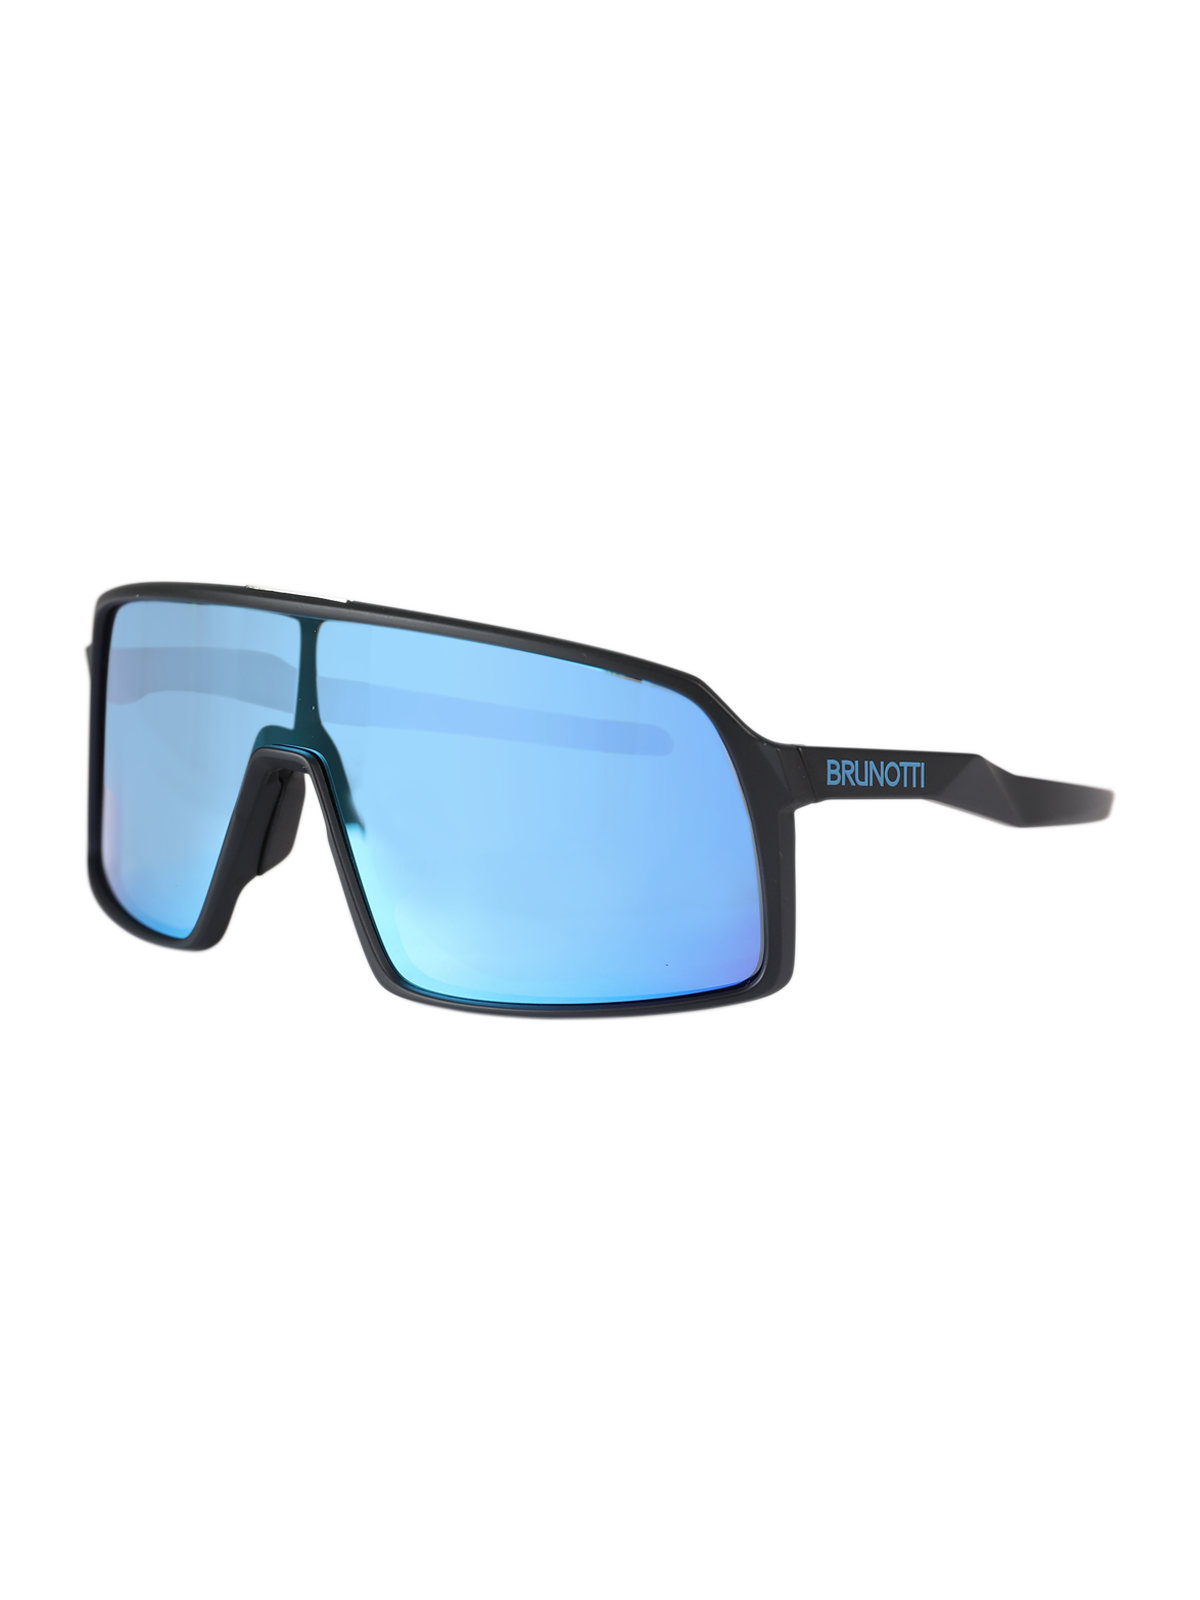 Caparica Unisex Sunglasses | Blue